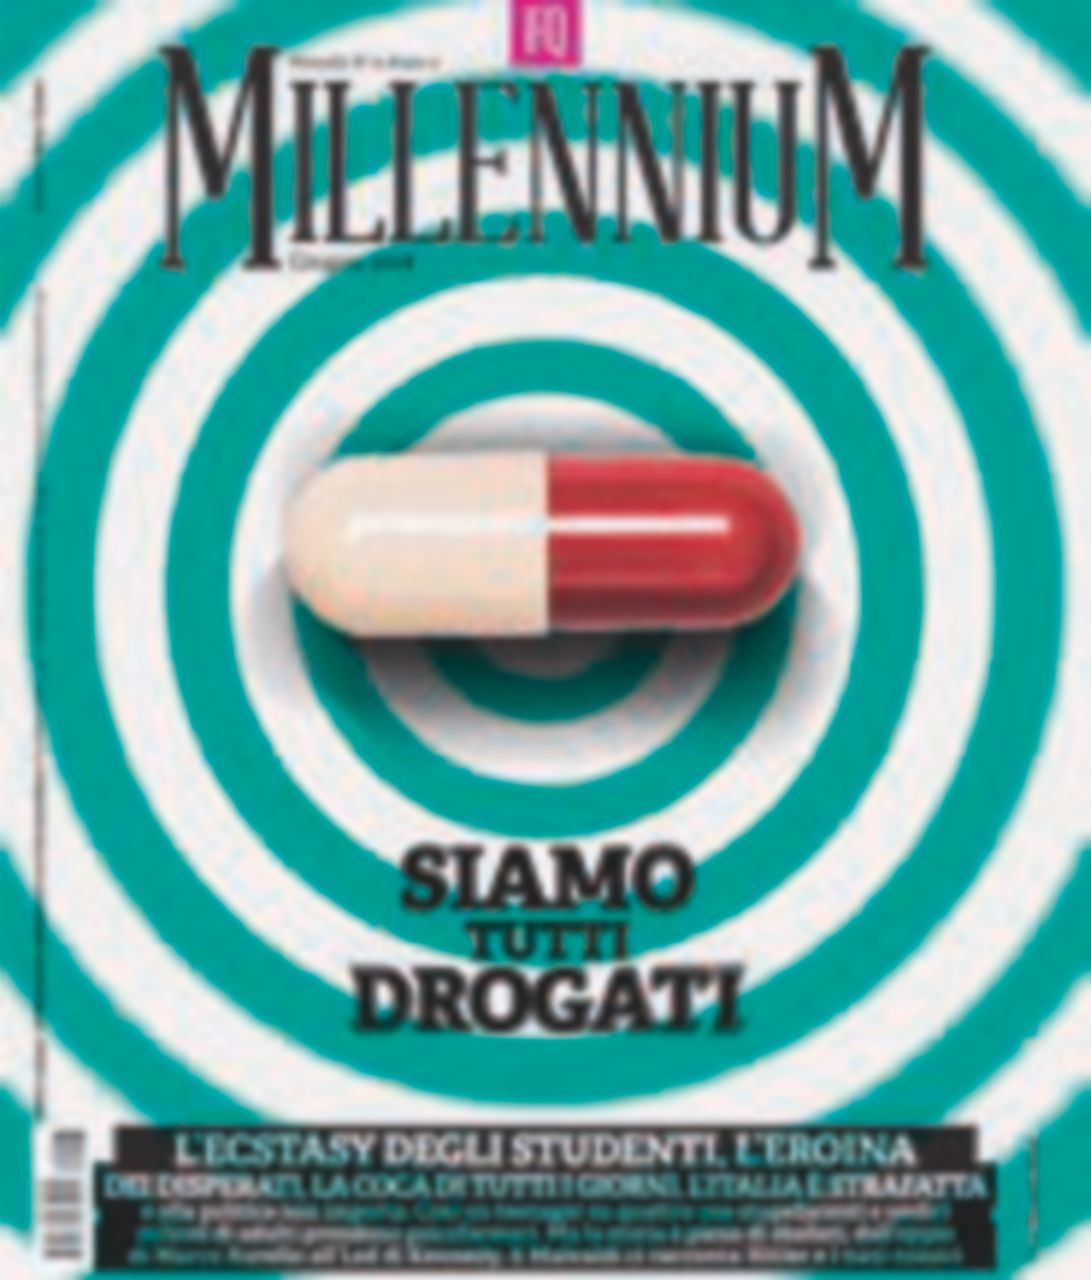 Copertina di Droga, su Fq MillenniuM in edicola l’incubo di quelle nuove. Legali e non